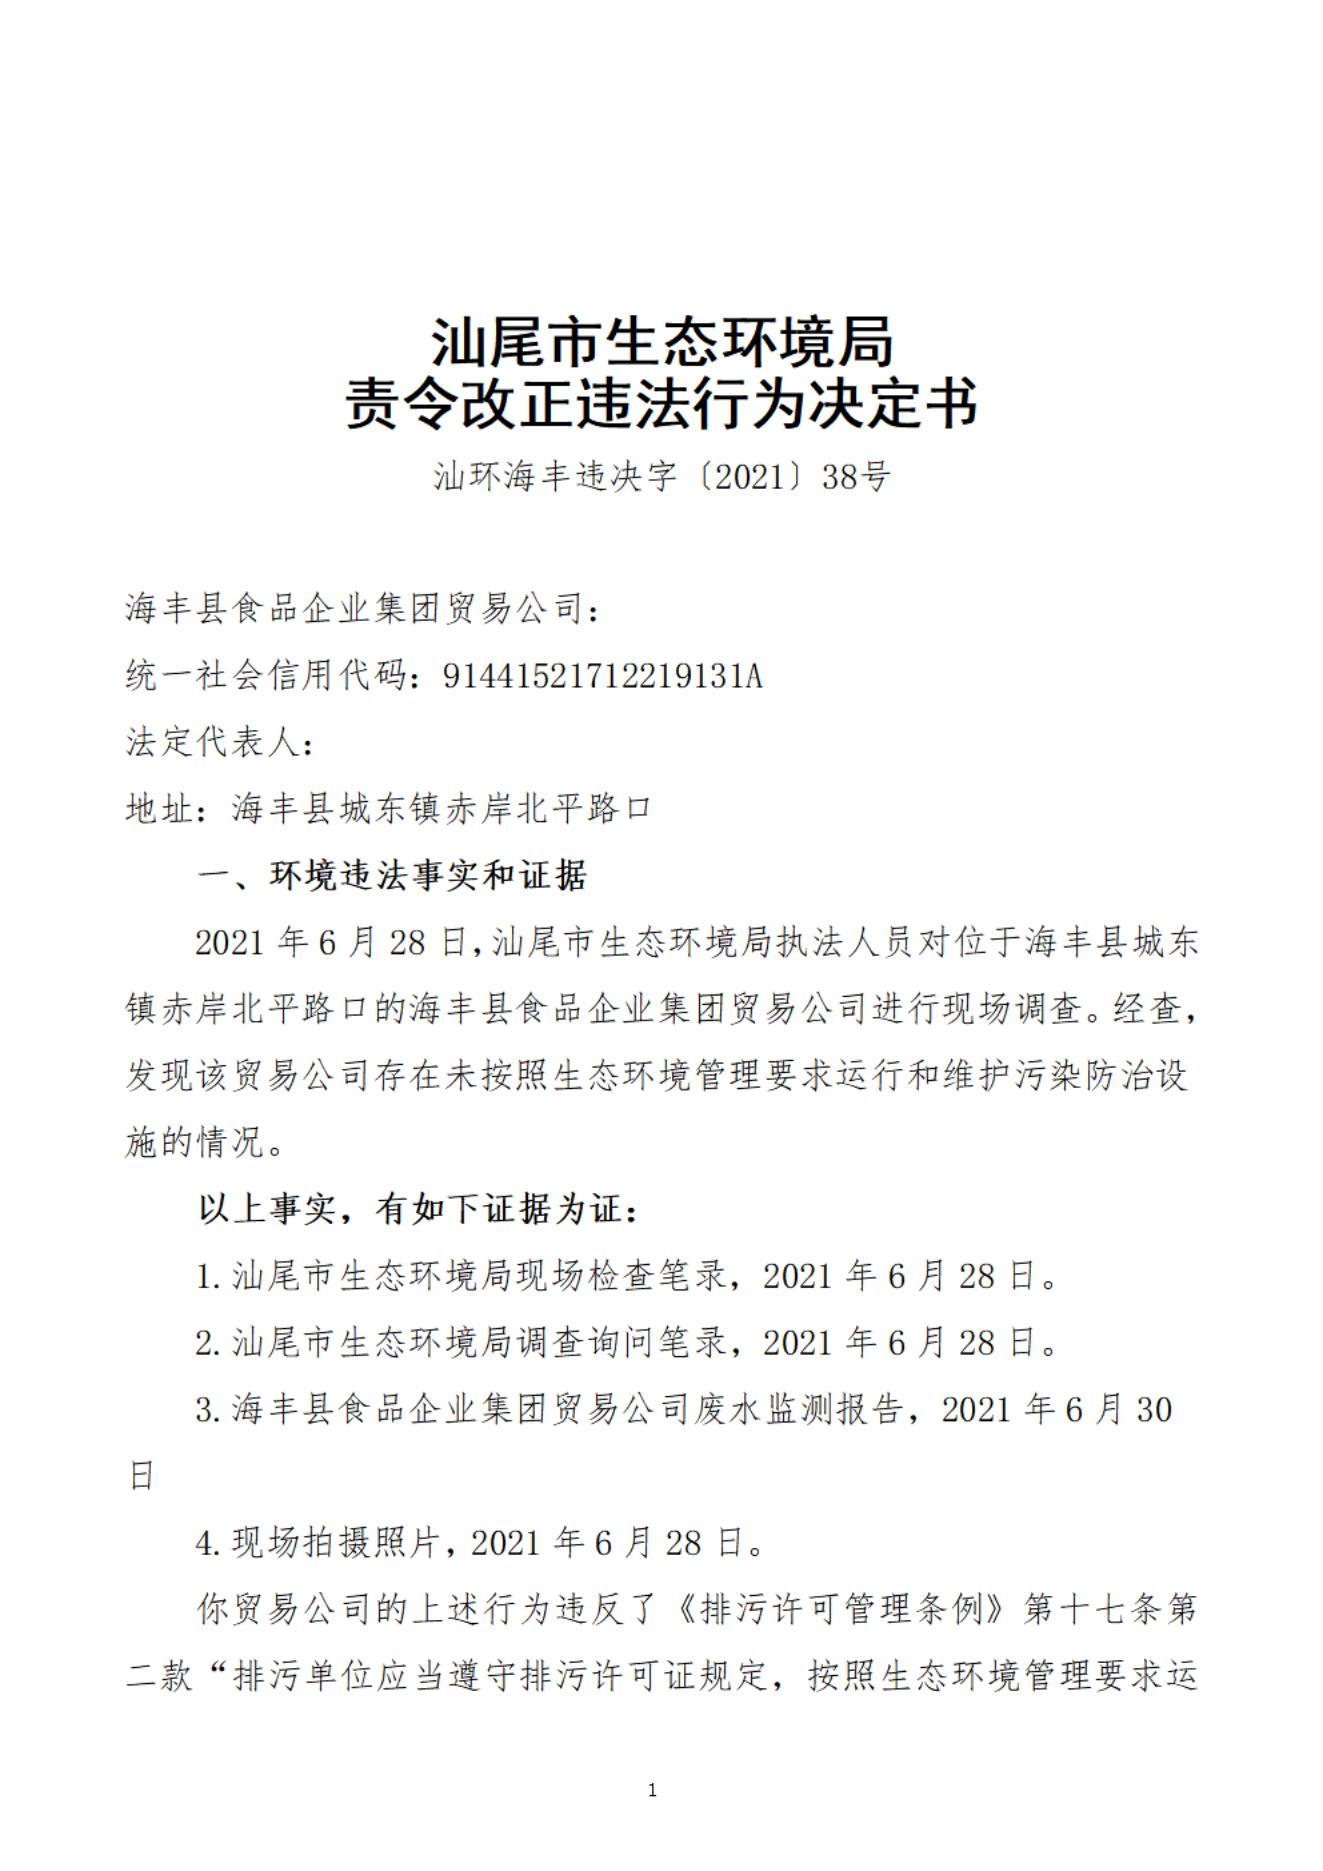 海丰县食品企业集团贸易公司决定书_20220106094211_00.jpg